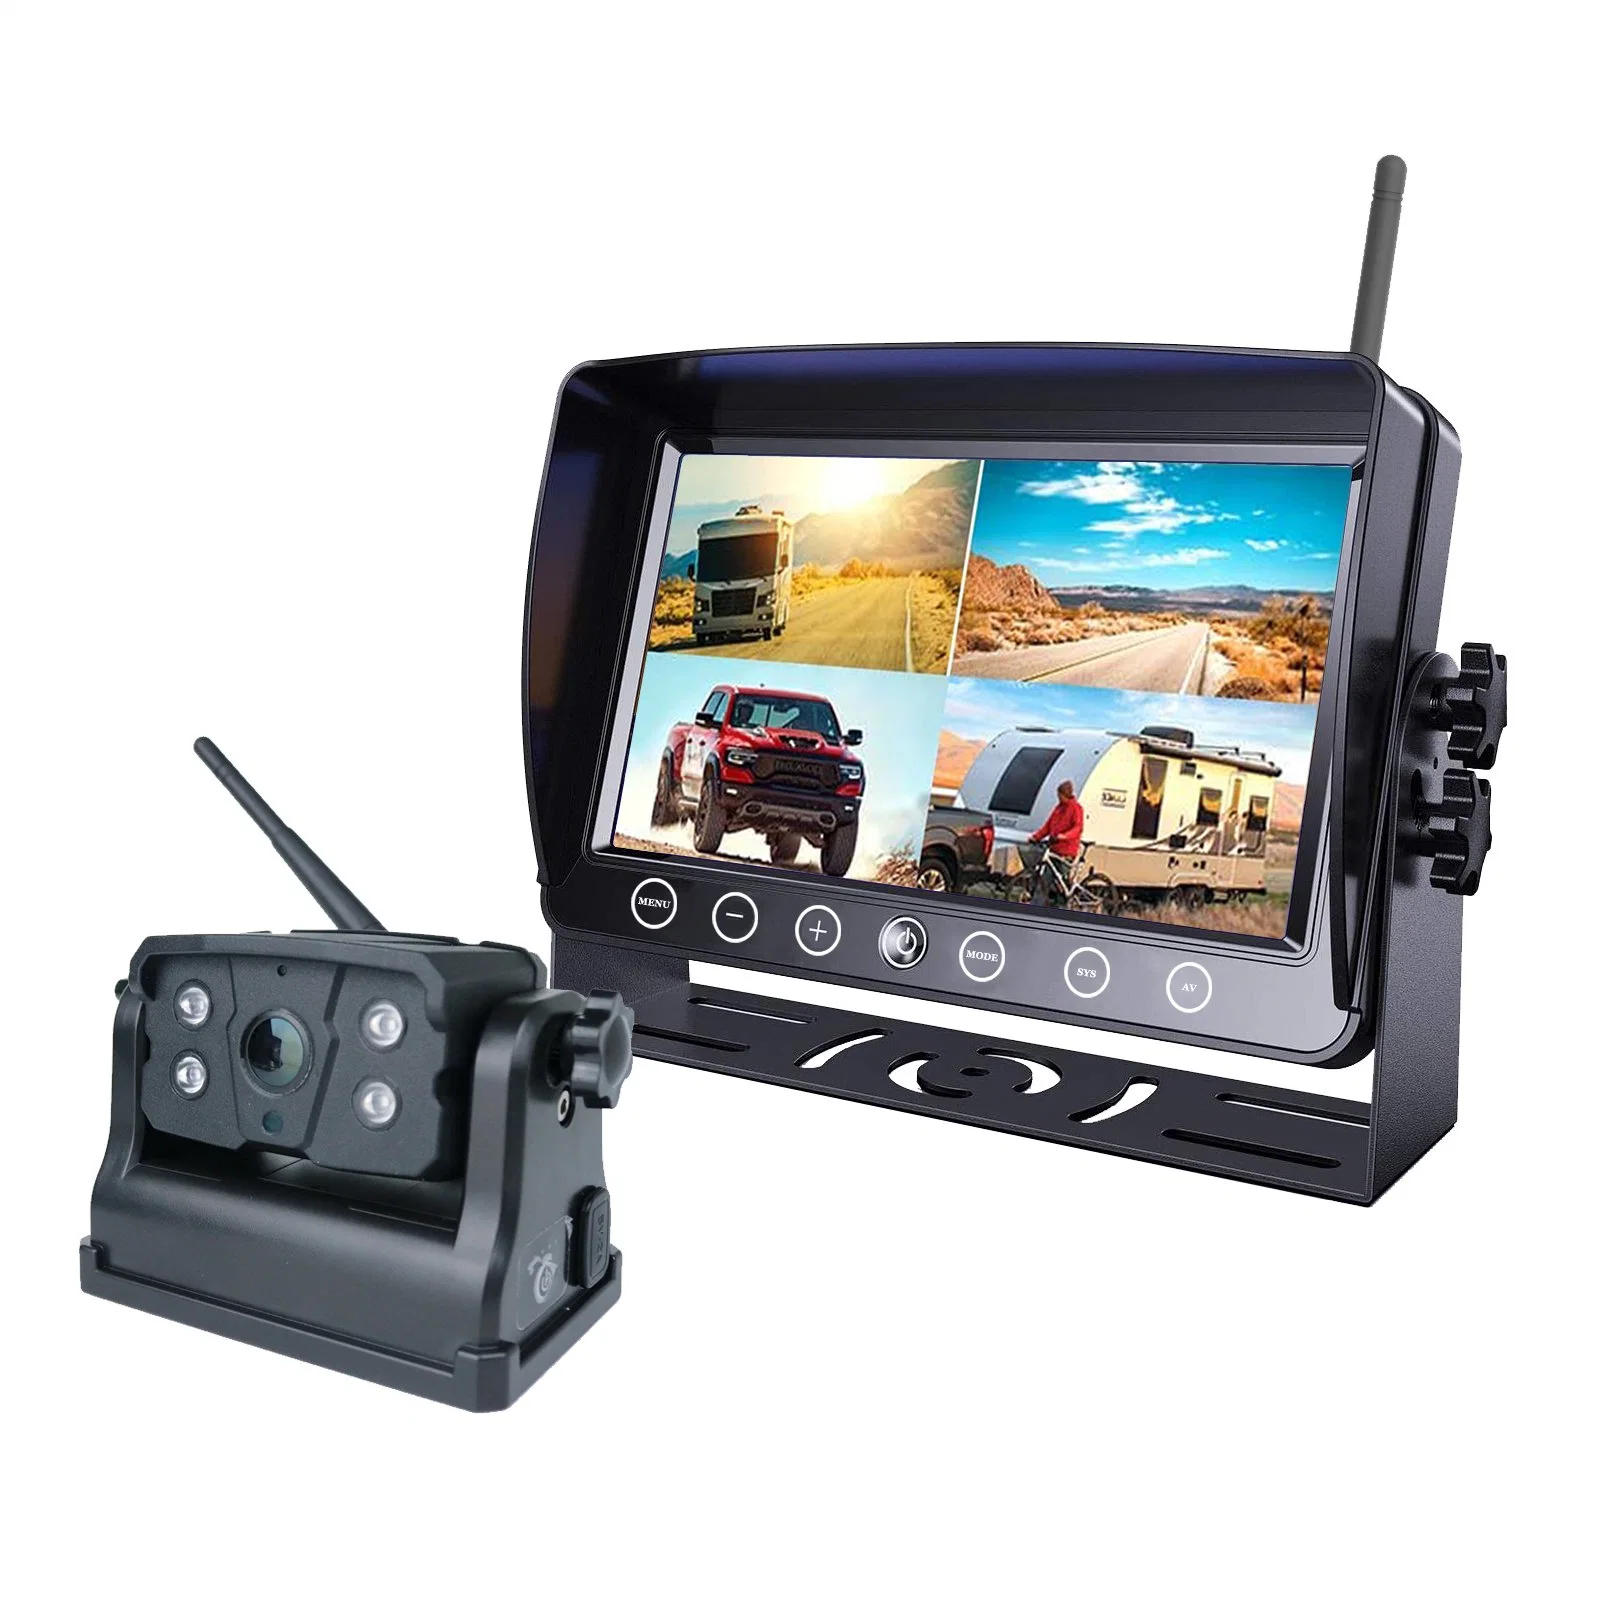 Caméra de recul sans fil numérique 7" avec moniteur quad intégré, enregistrement en boucle, base magnétique, alimentation par batterie.